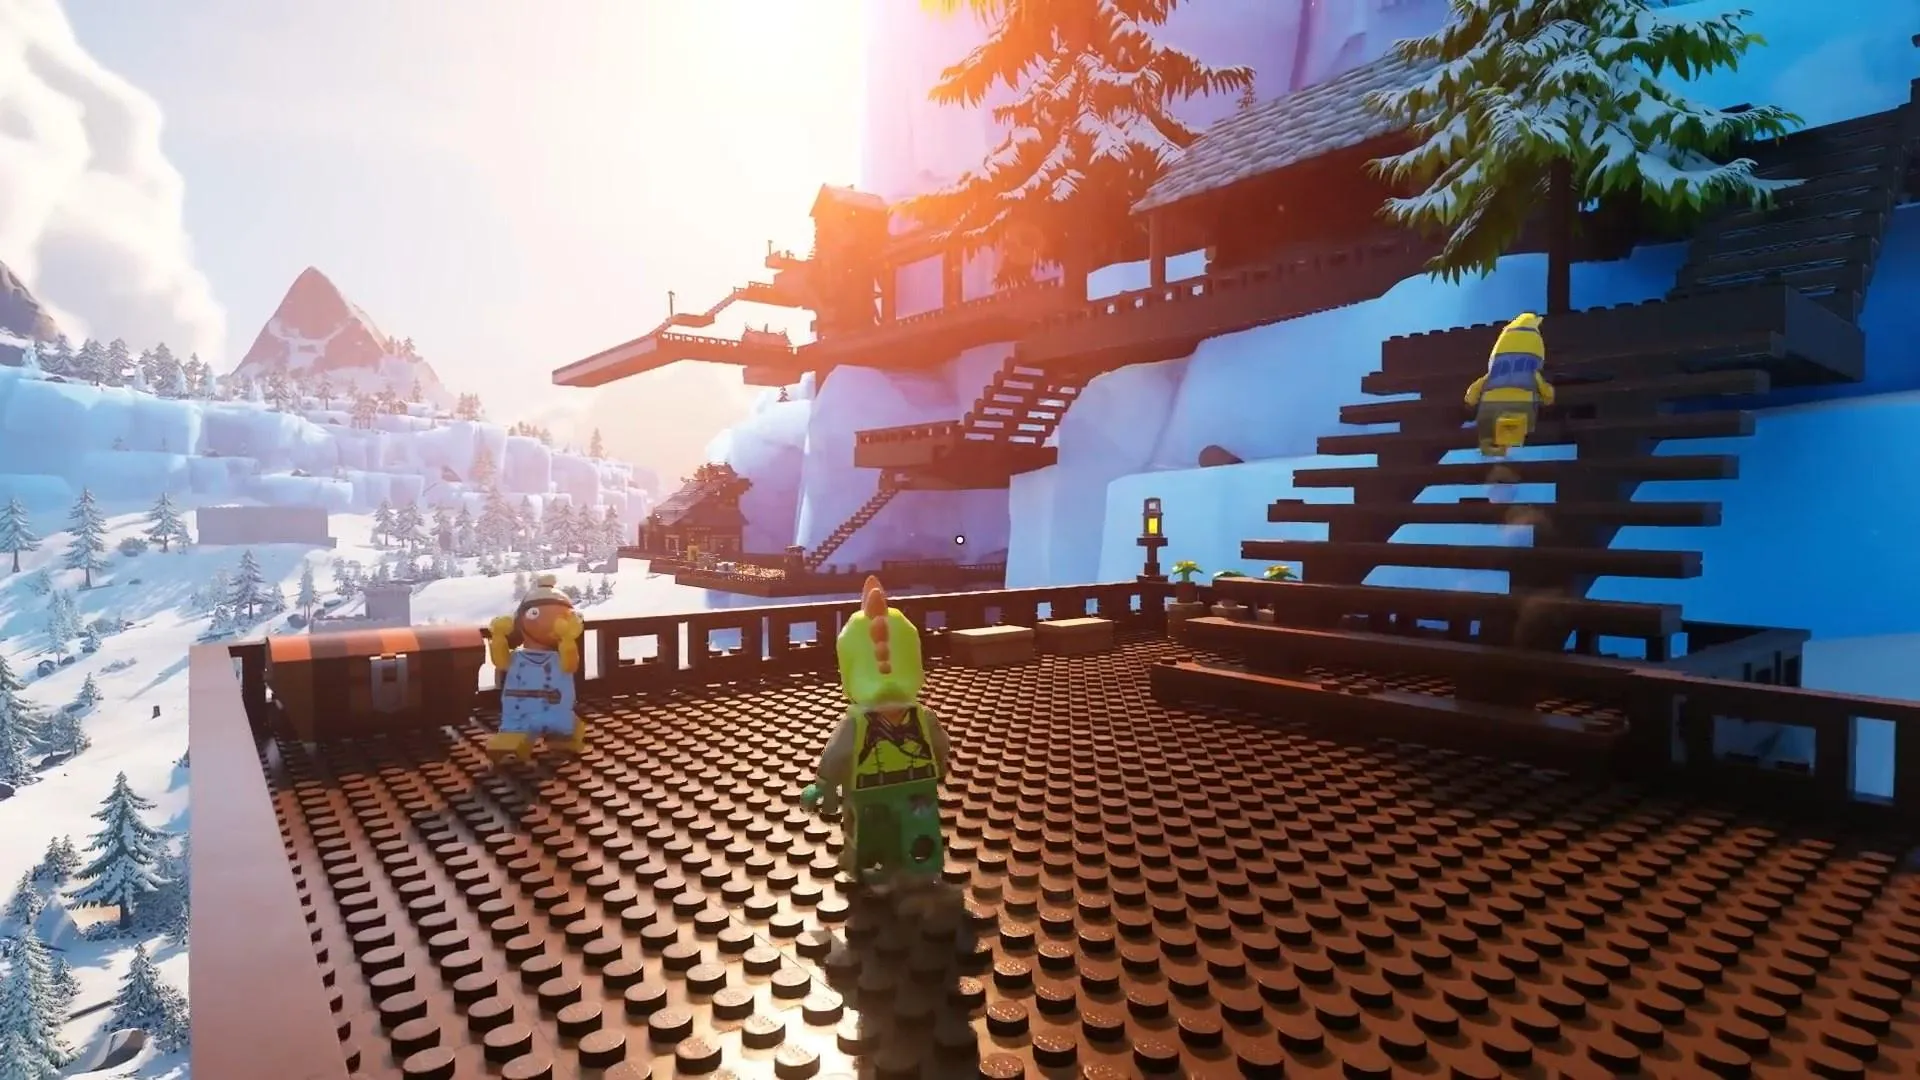 Lego Fortnite progression walkthrough to reach the endgame - Polygon